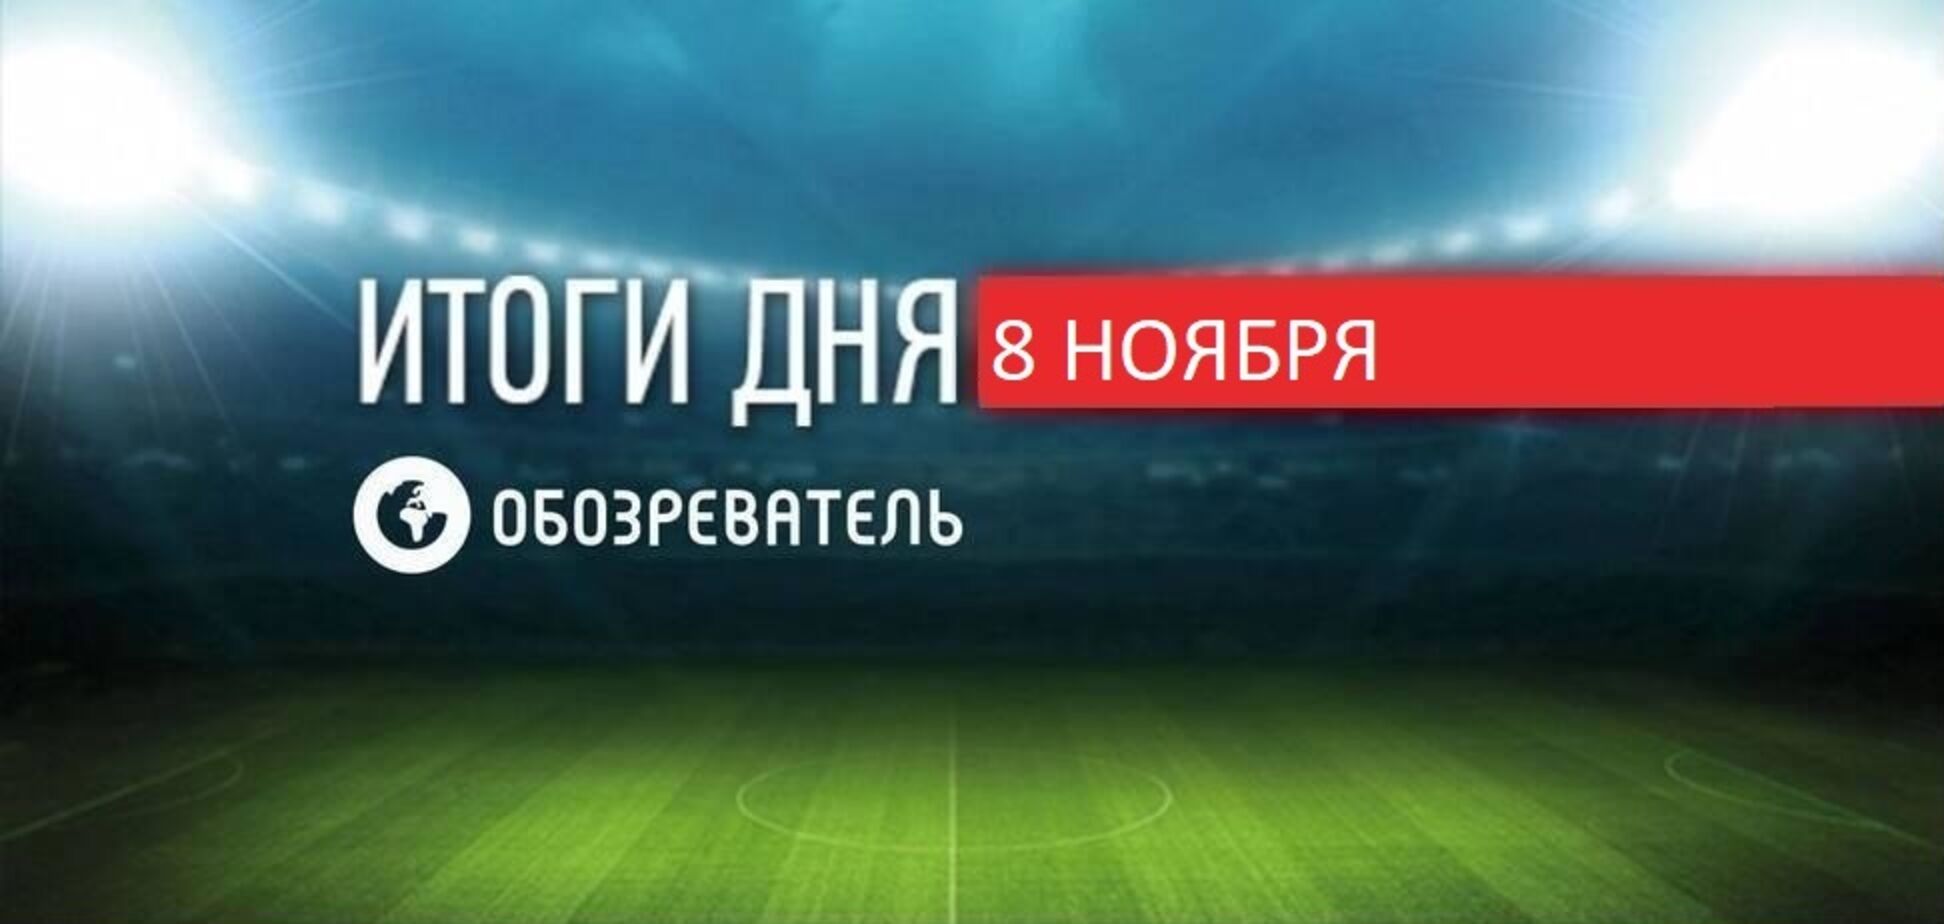 Капитан сборной России по футболу угодил в секс-скандал: спортивные итоги 8 ноября